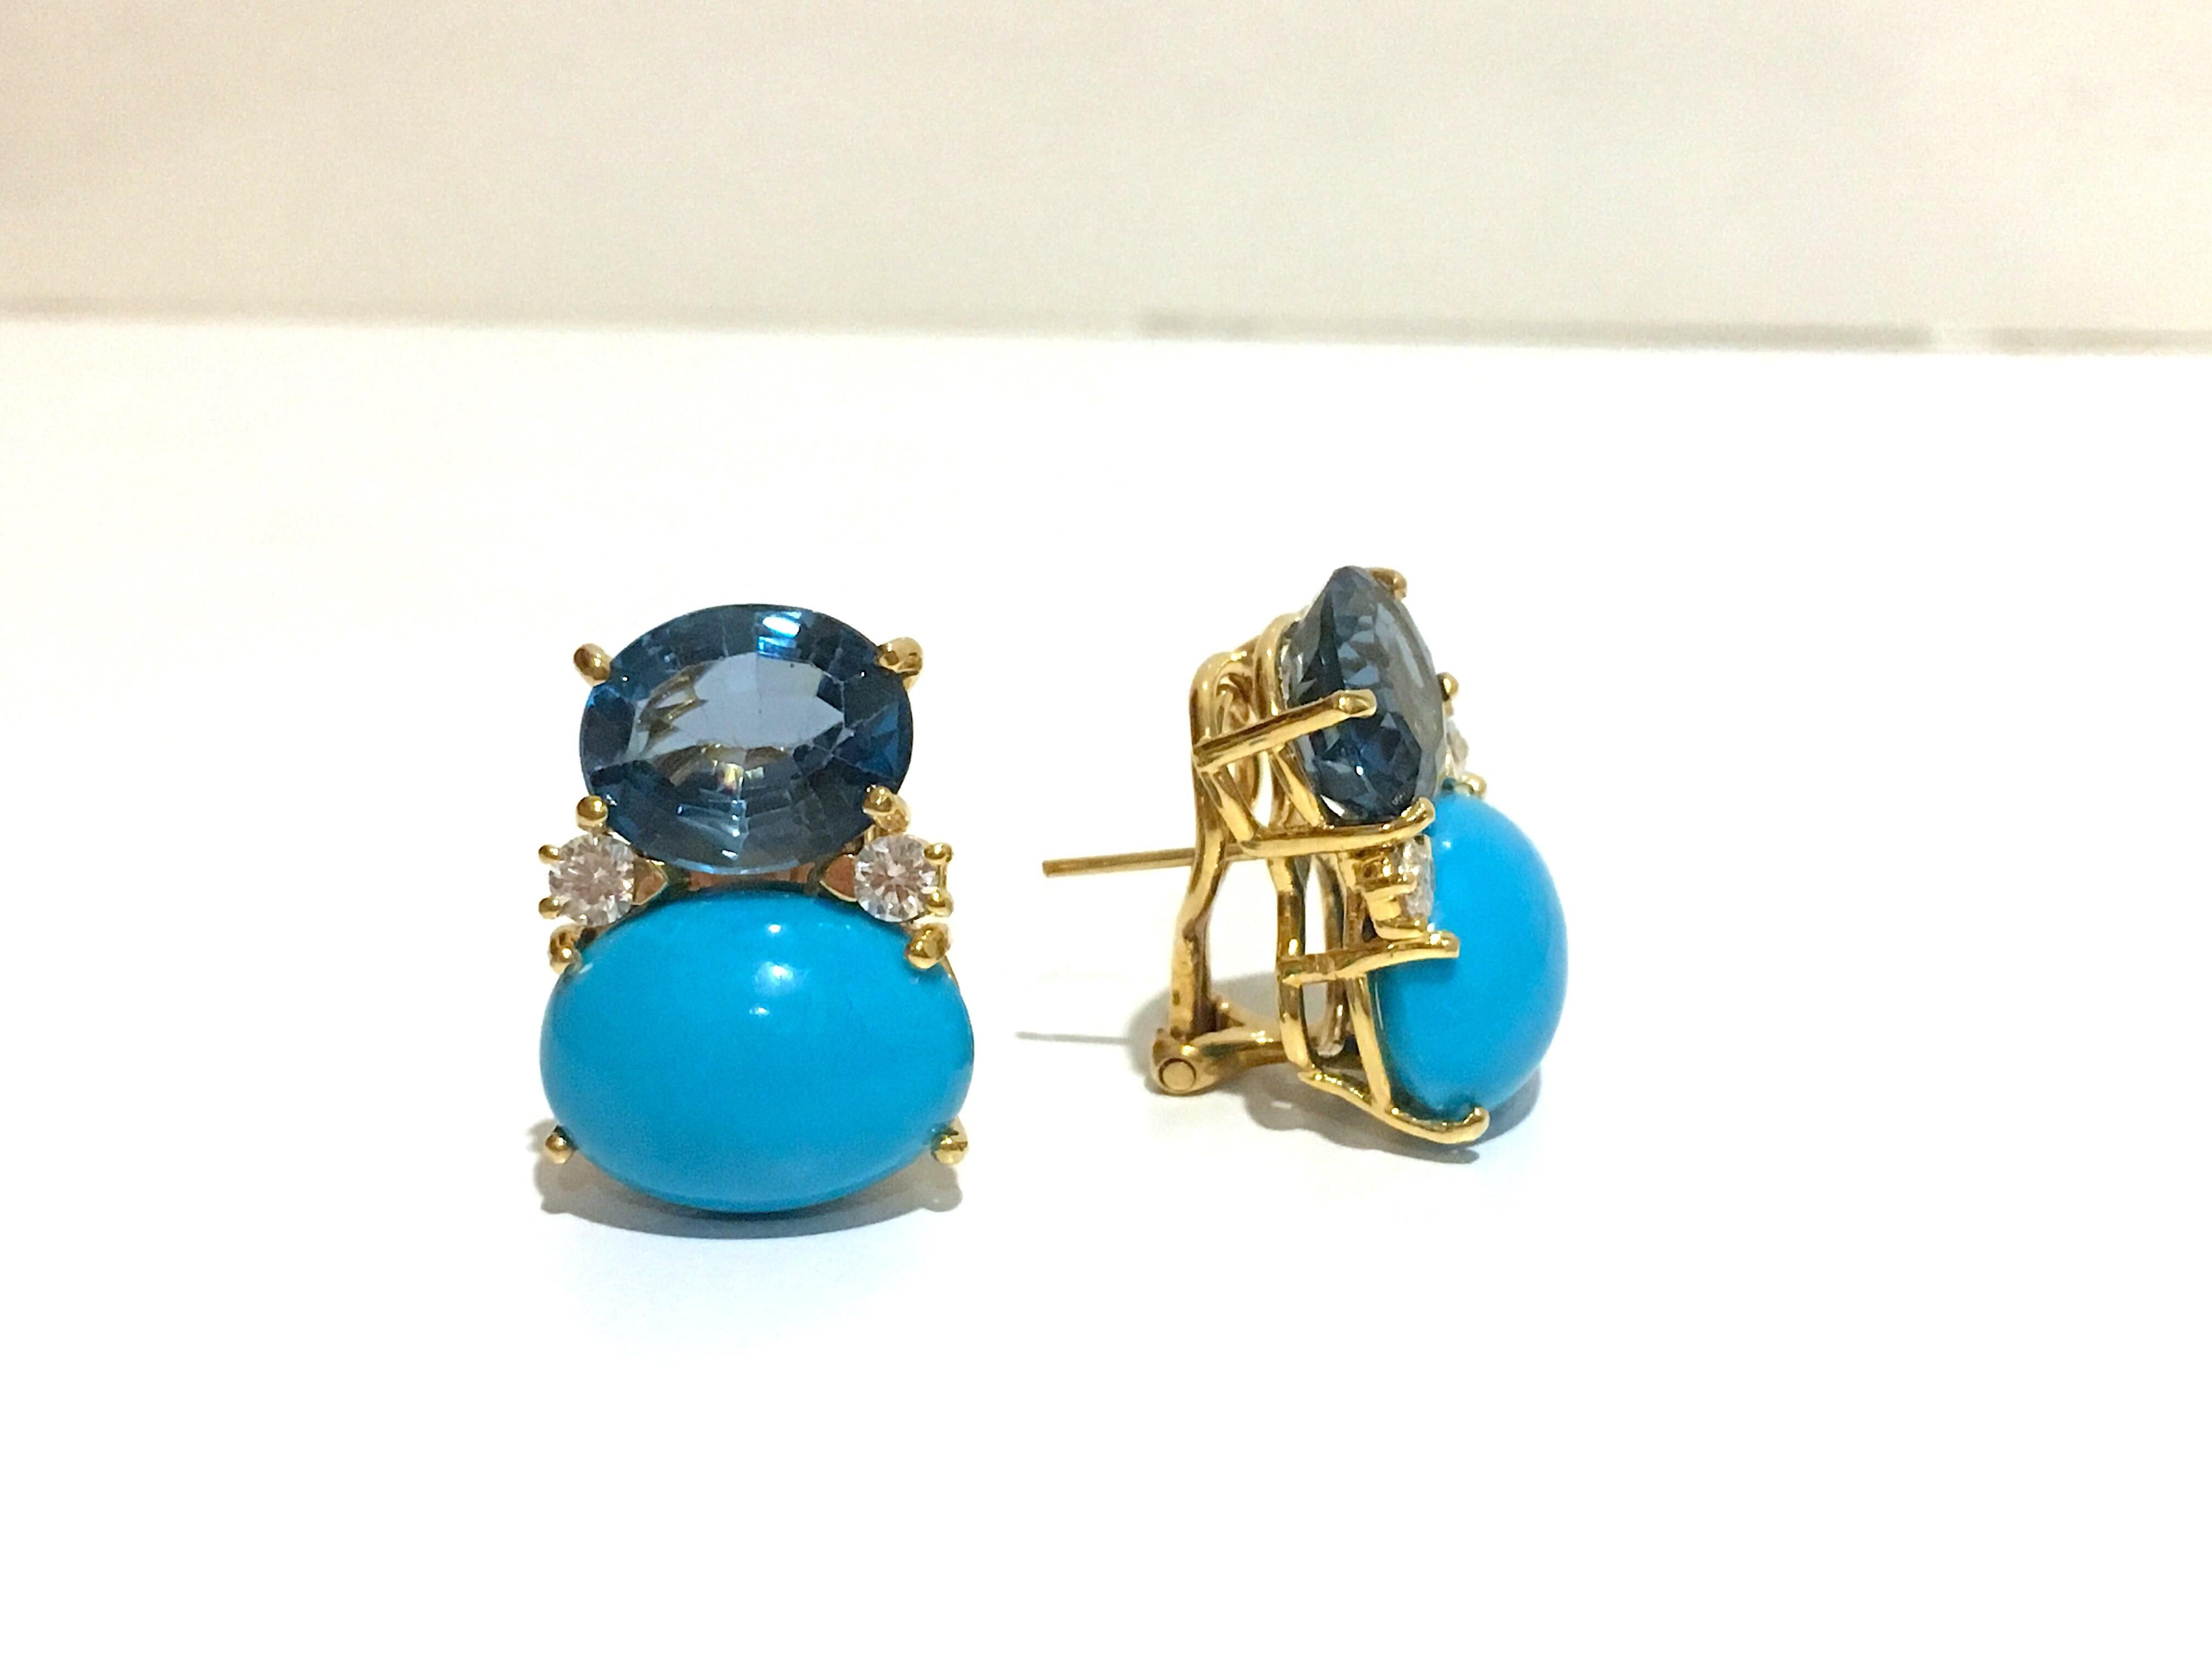 Große GUM DROP™-Ohrringe aus 18-karätigem Gelbgold mit blauem Topas und Türkis sowie Diamanten. 
 
Clip oder durchbohrt

Der Blautopas hat ein Gewicht von ca. 5 Karat und der Türkis von ca. 12 Karat, sowie 4 Diamanten mit einem Gewicht von ca. 0,60